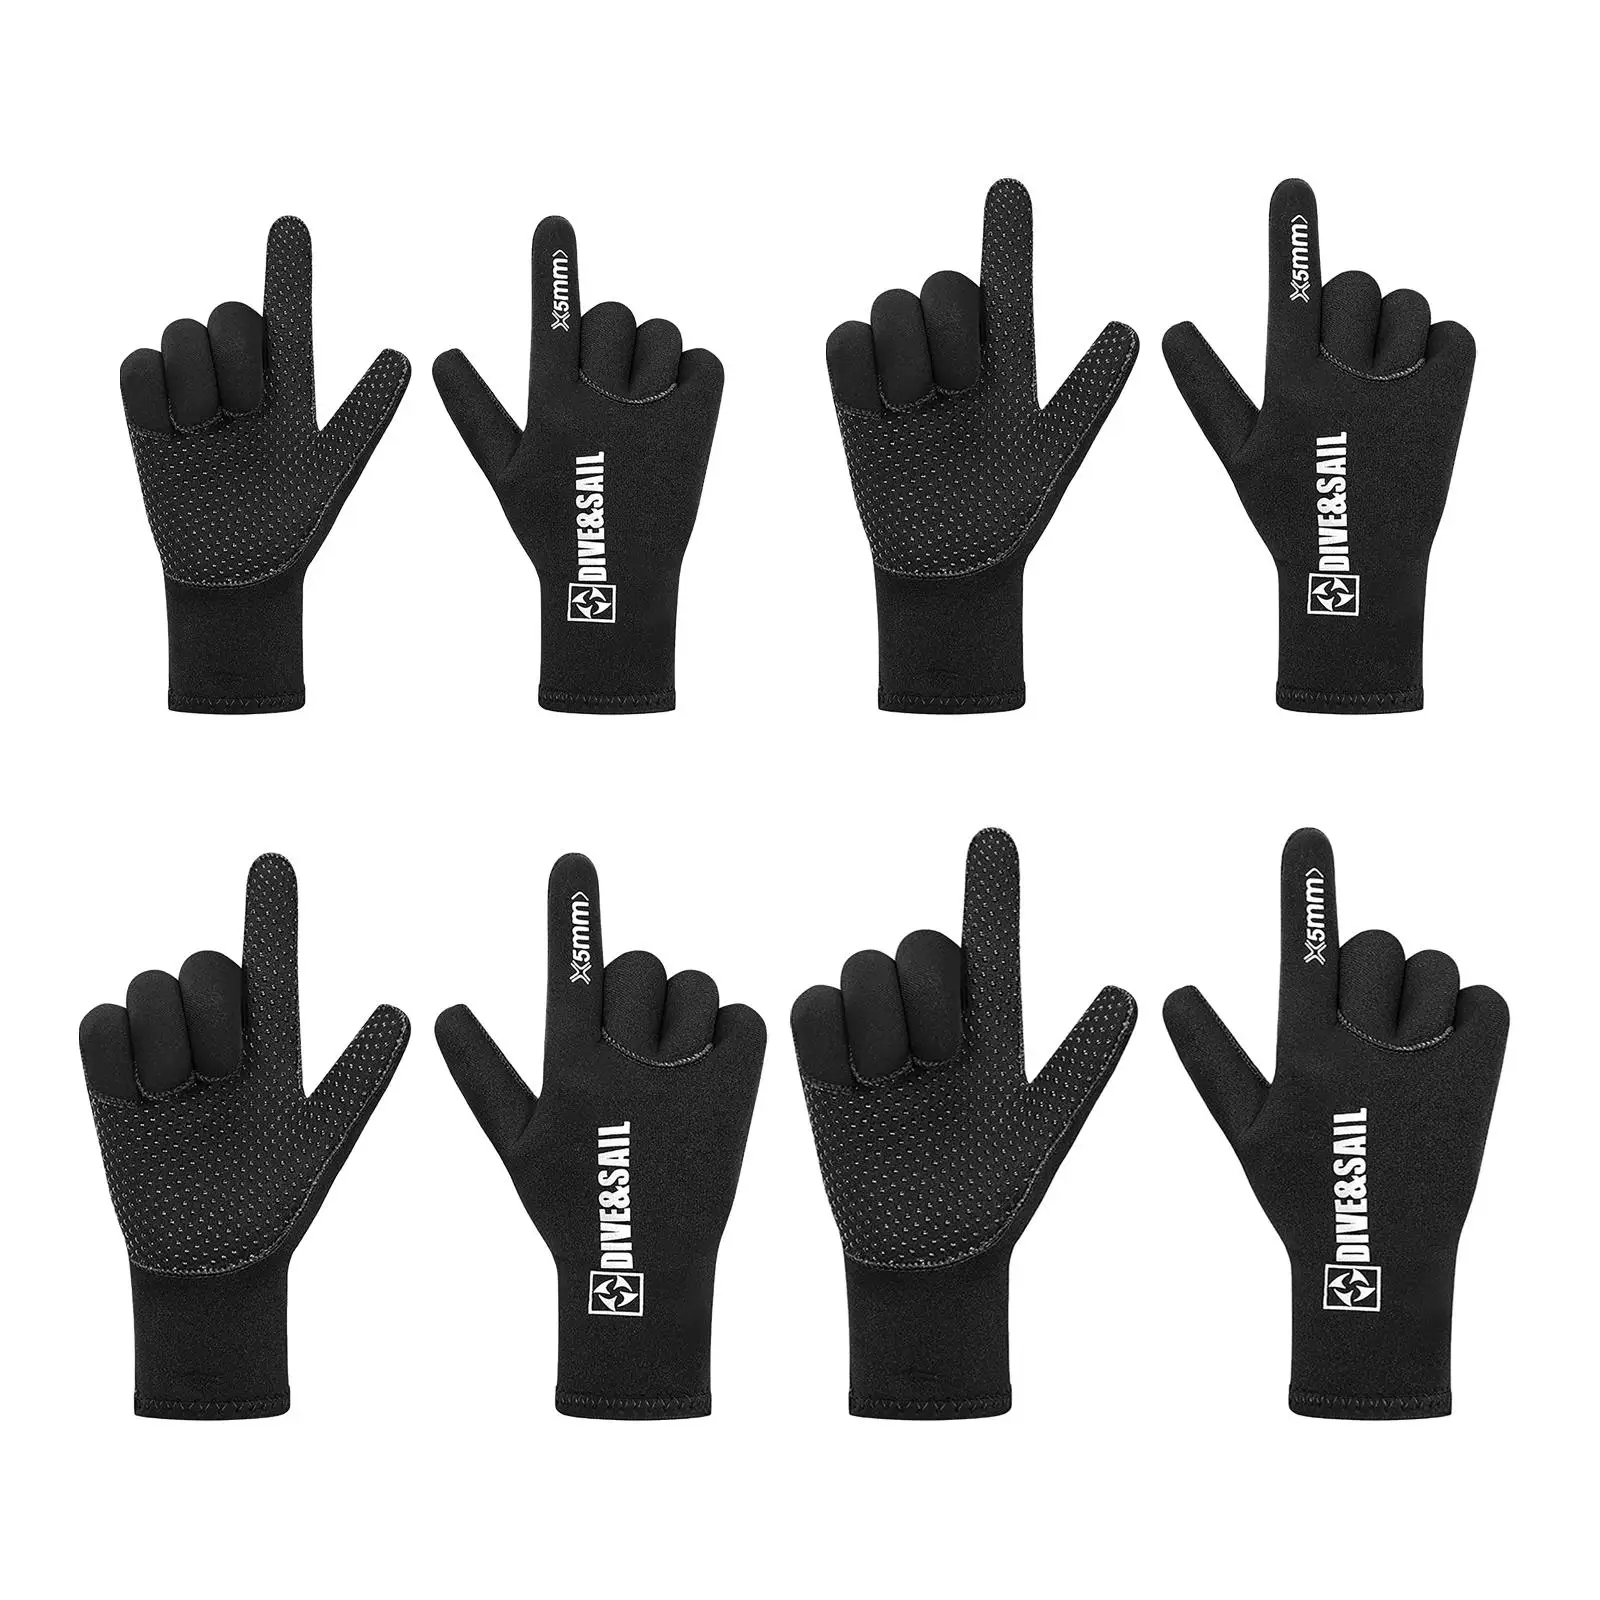 Diving Gloves Flexible Anti-Slip Wetsuit Five Finger Glove for Canoeing